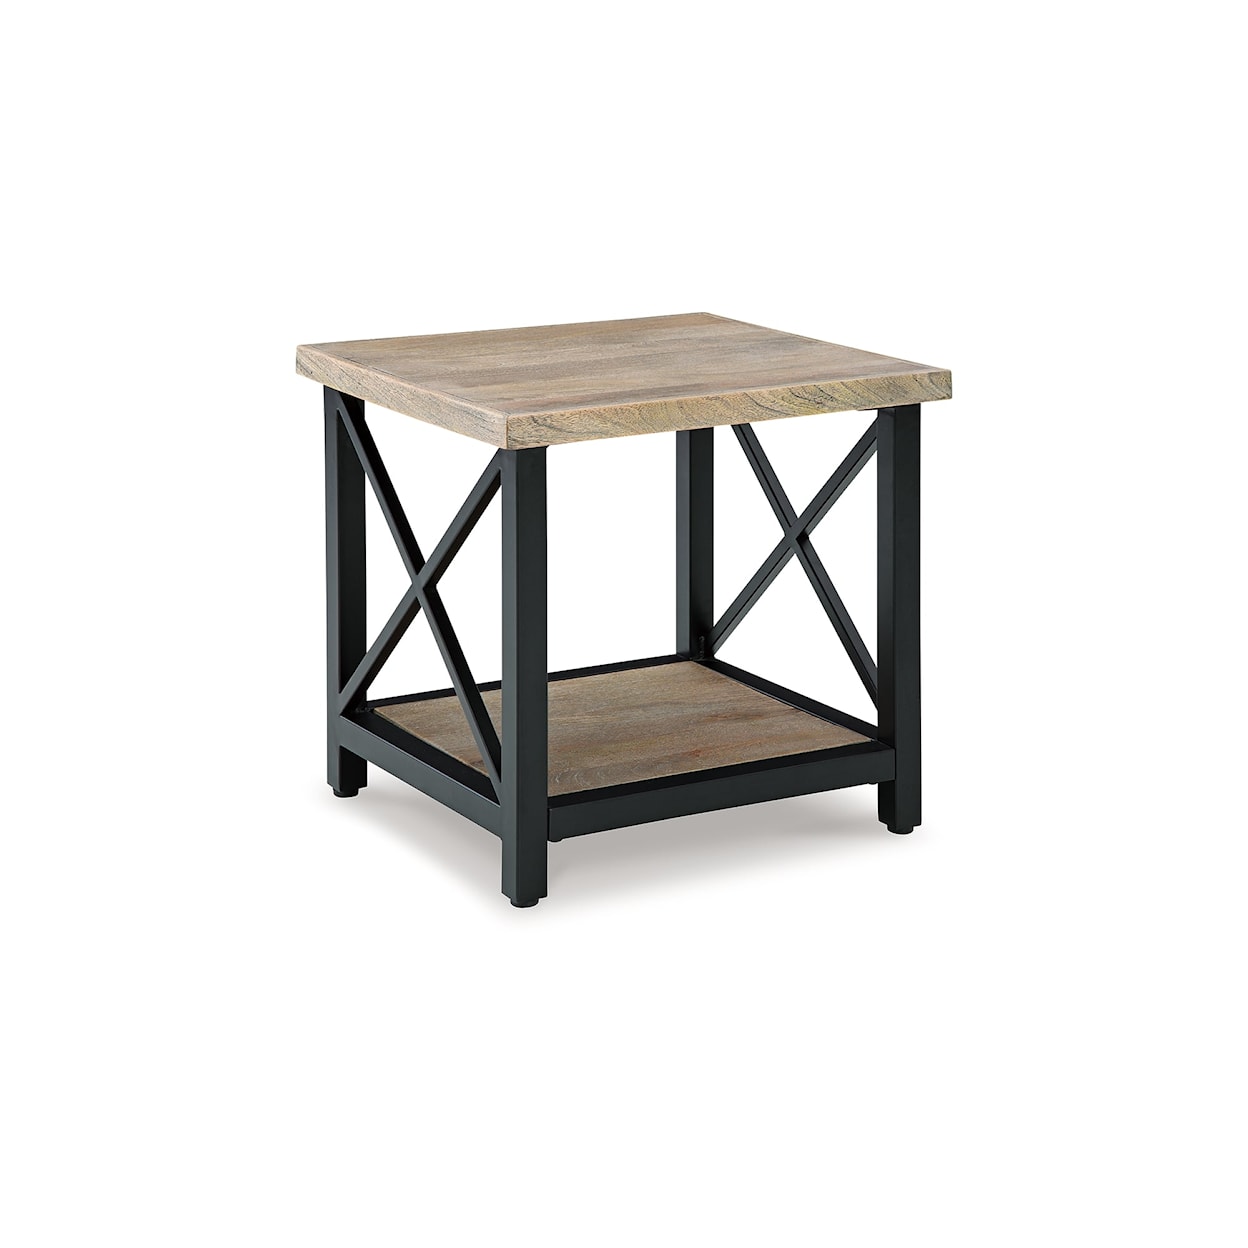 Benchcraft Bristenfort Rectangular End Table